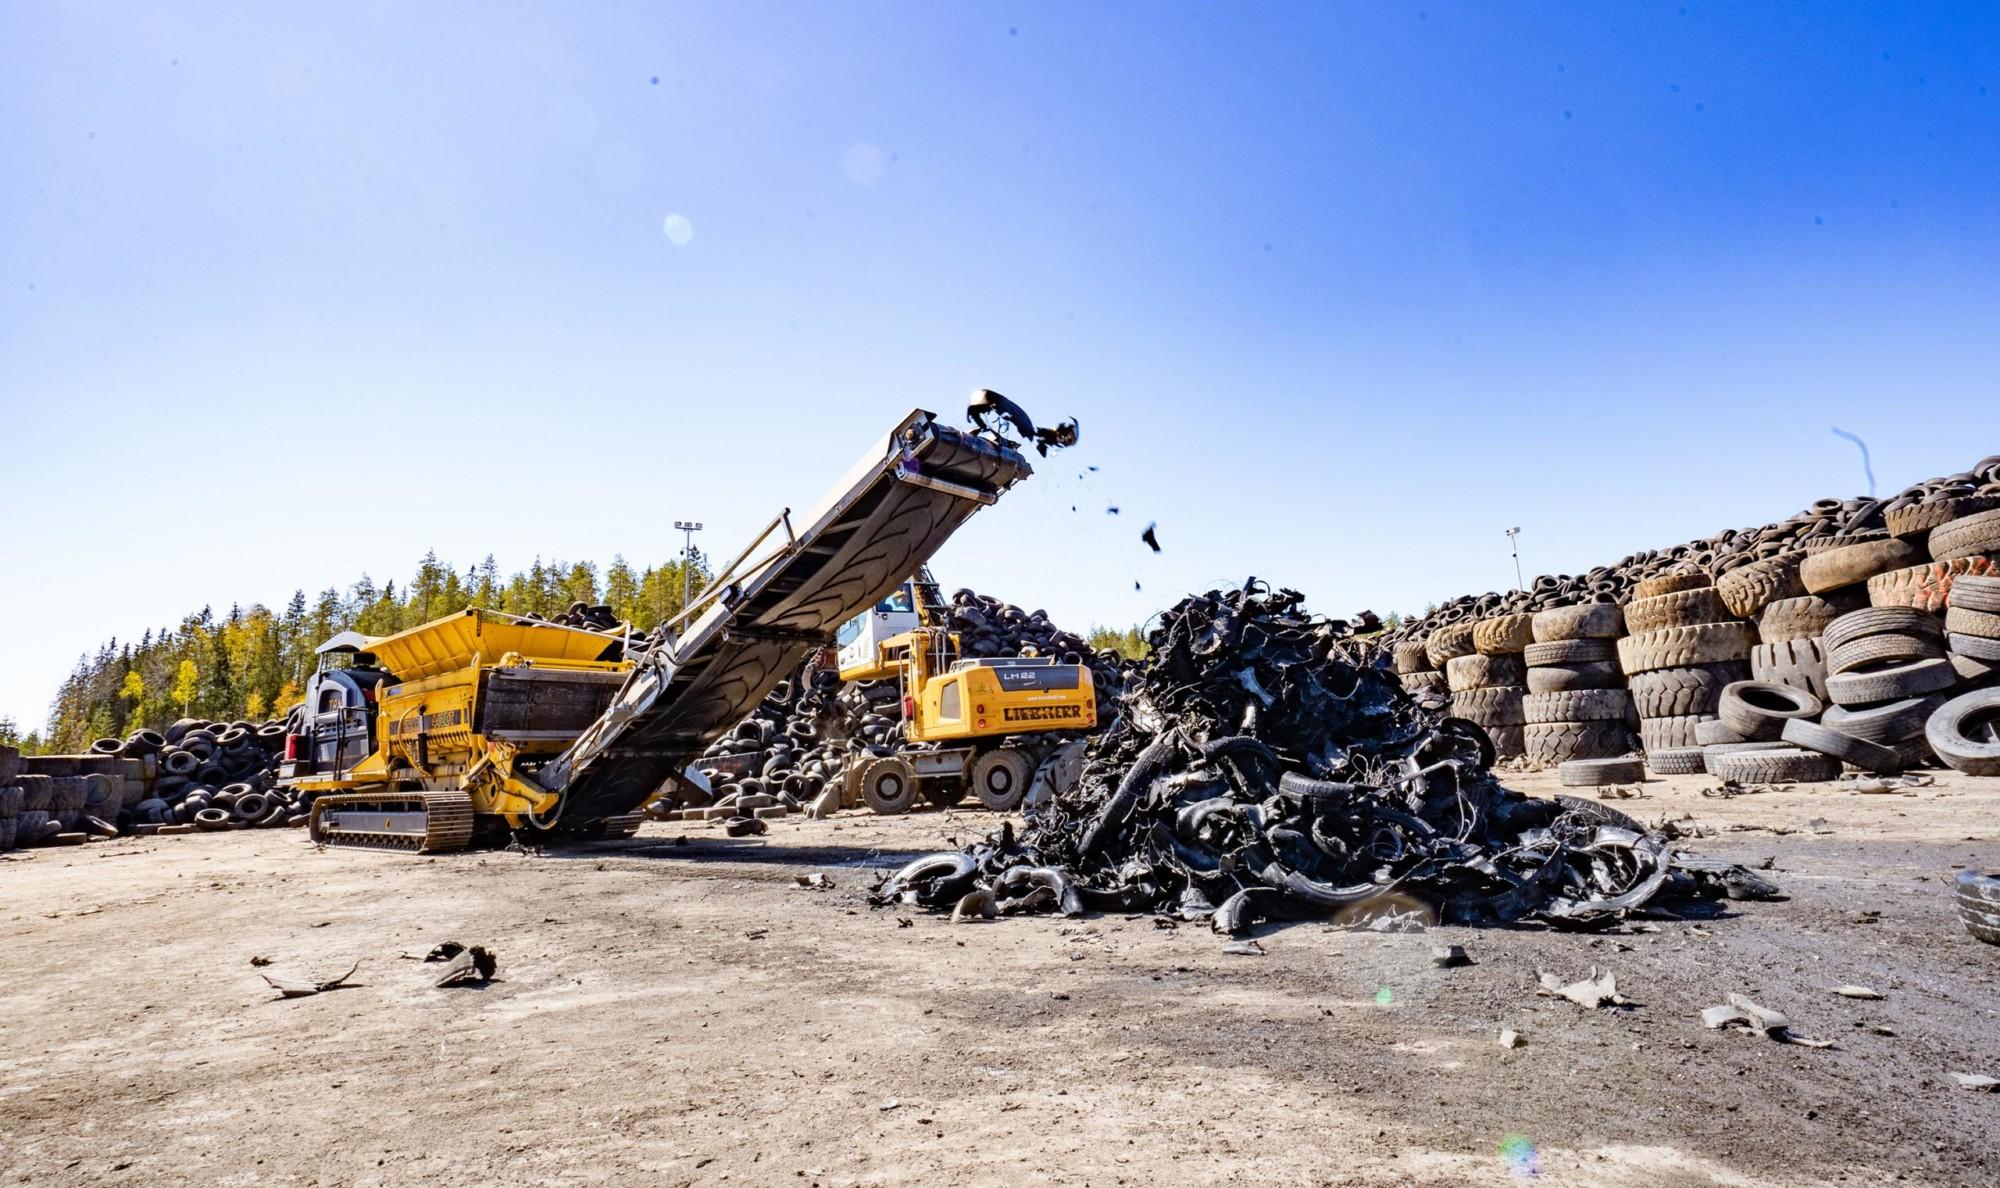 TANA industrial waste shredder Shredding rubber waste for energy